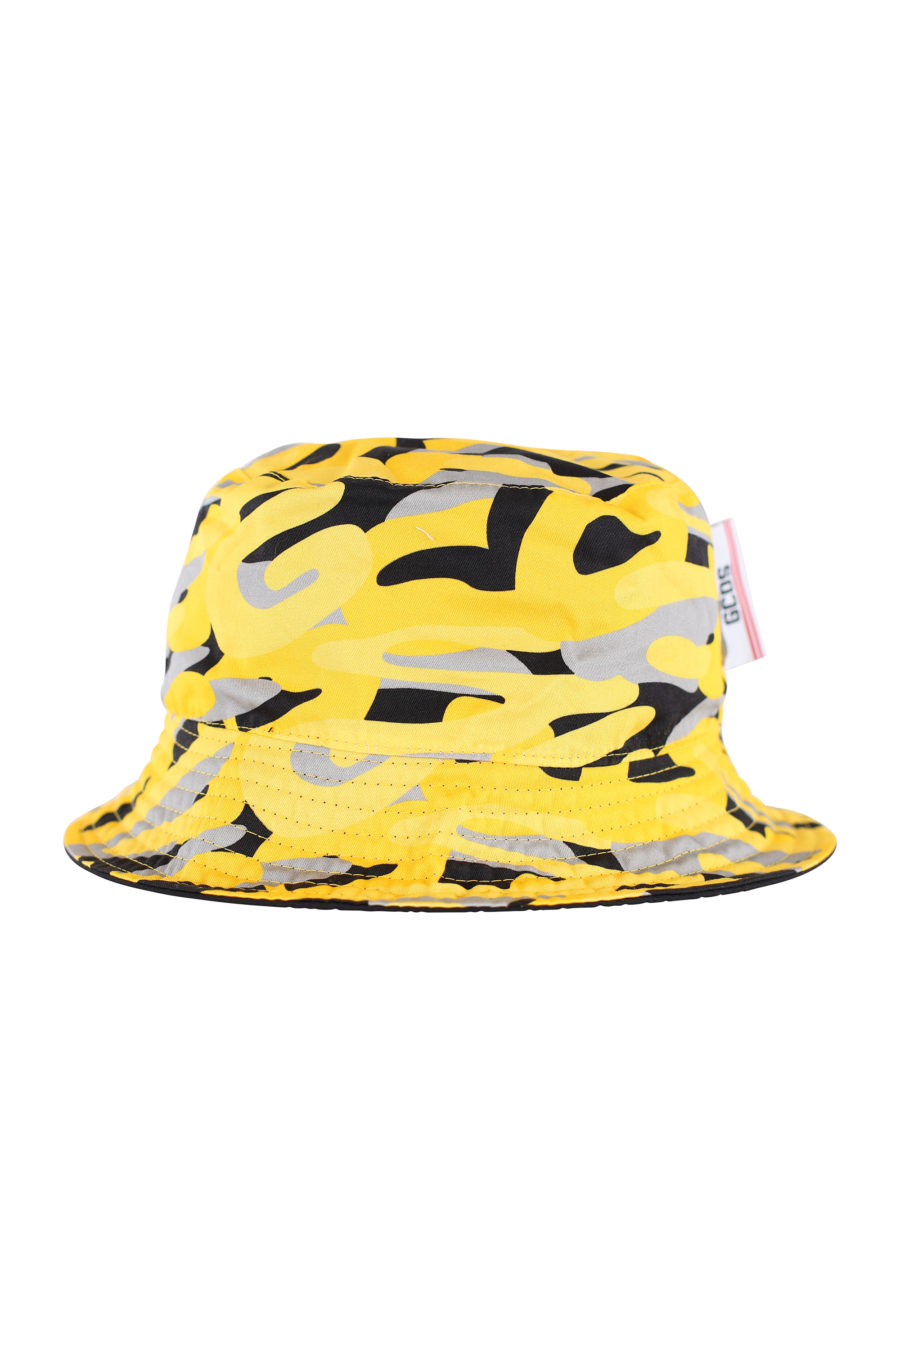 Sombrero de pescador negro reversible - IMG 1495